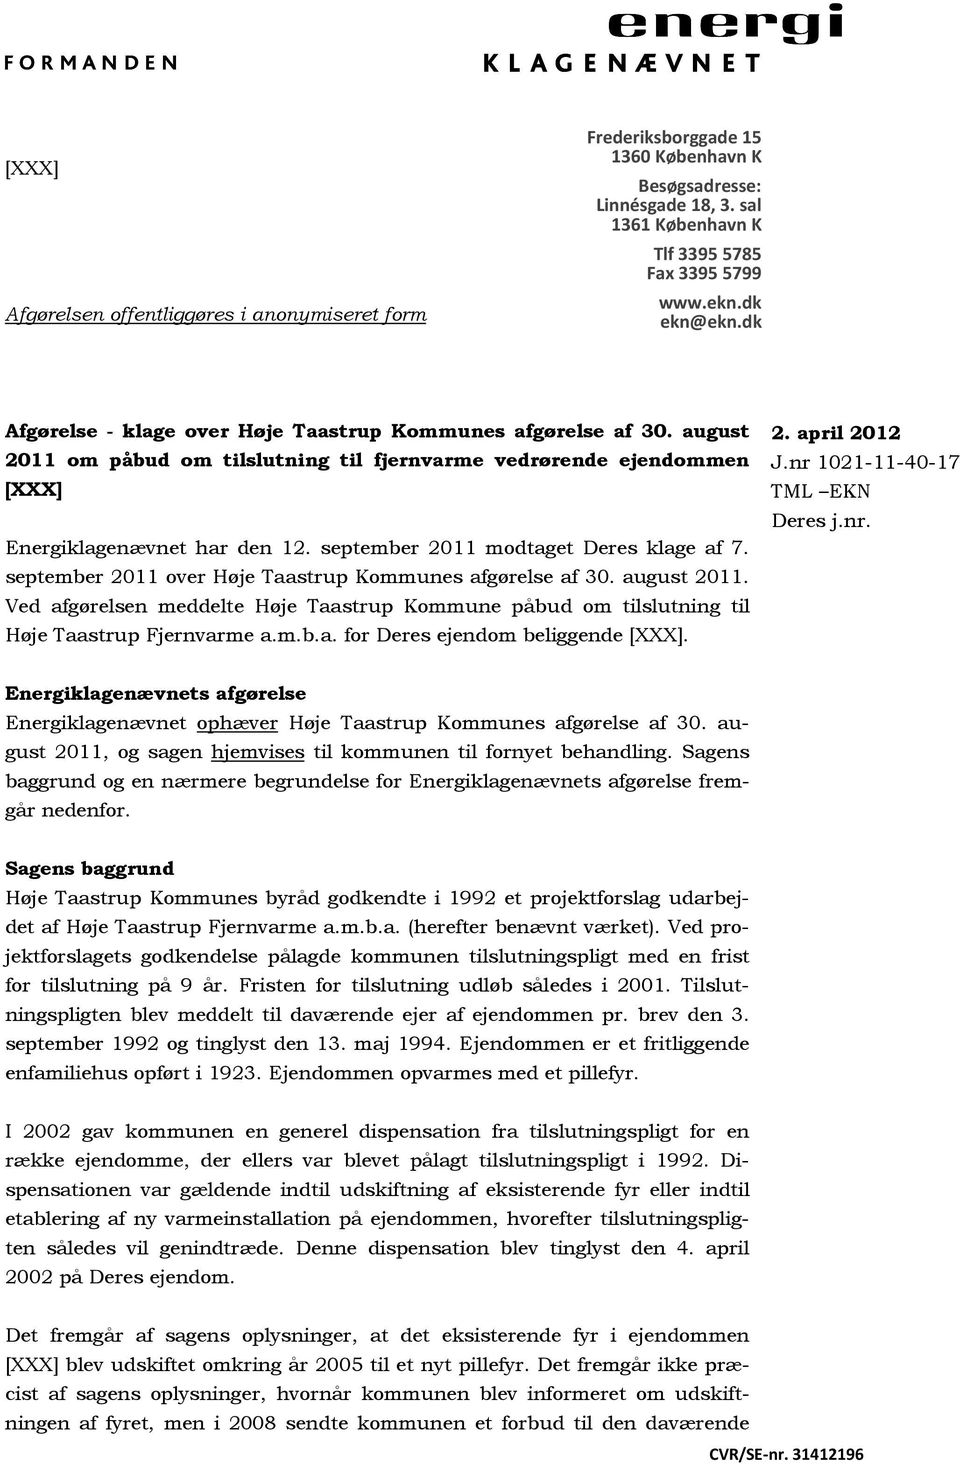 september 2011 modtaget Deres klage af 7. september 2011 over Høje Taastrup Kommunes afgørelse af 30. august 2011.